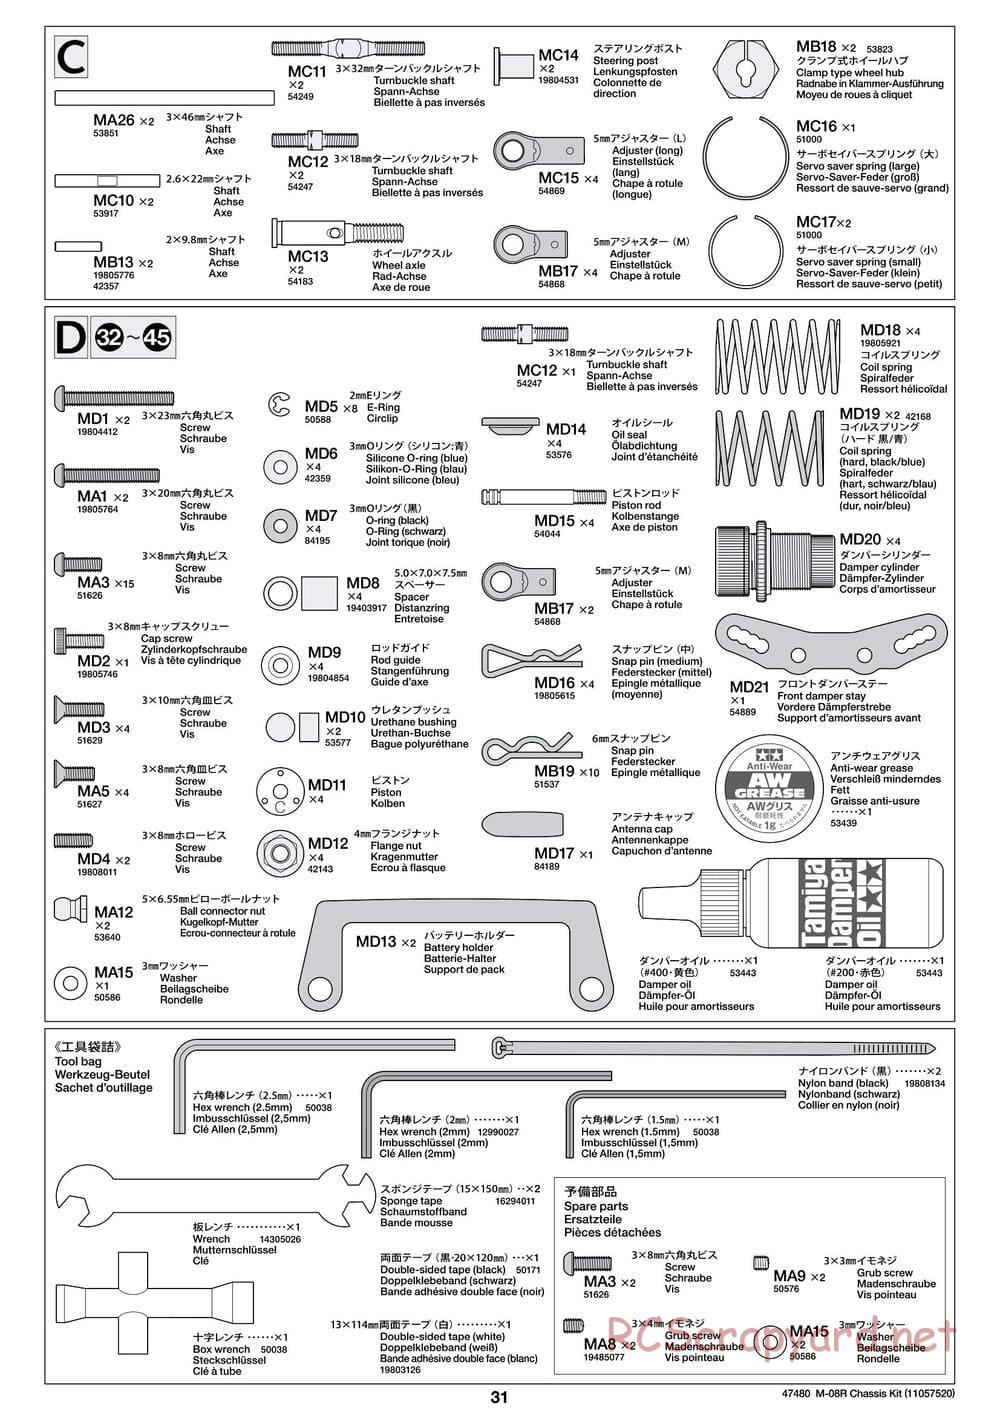 Tamiya - M-08R Chassis - Manual - Page 31